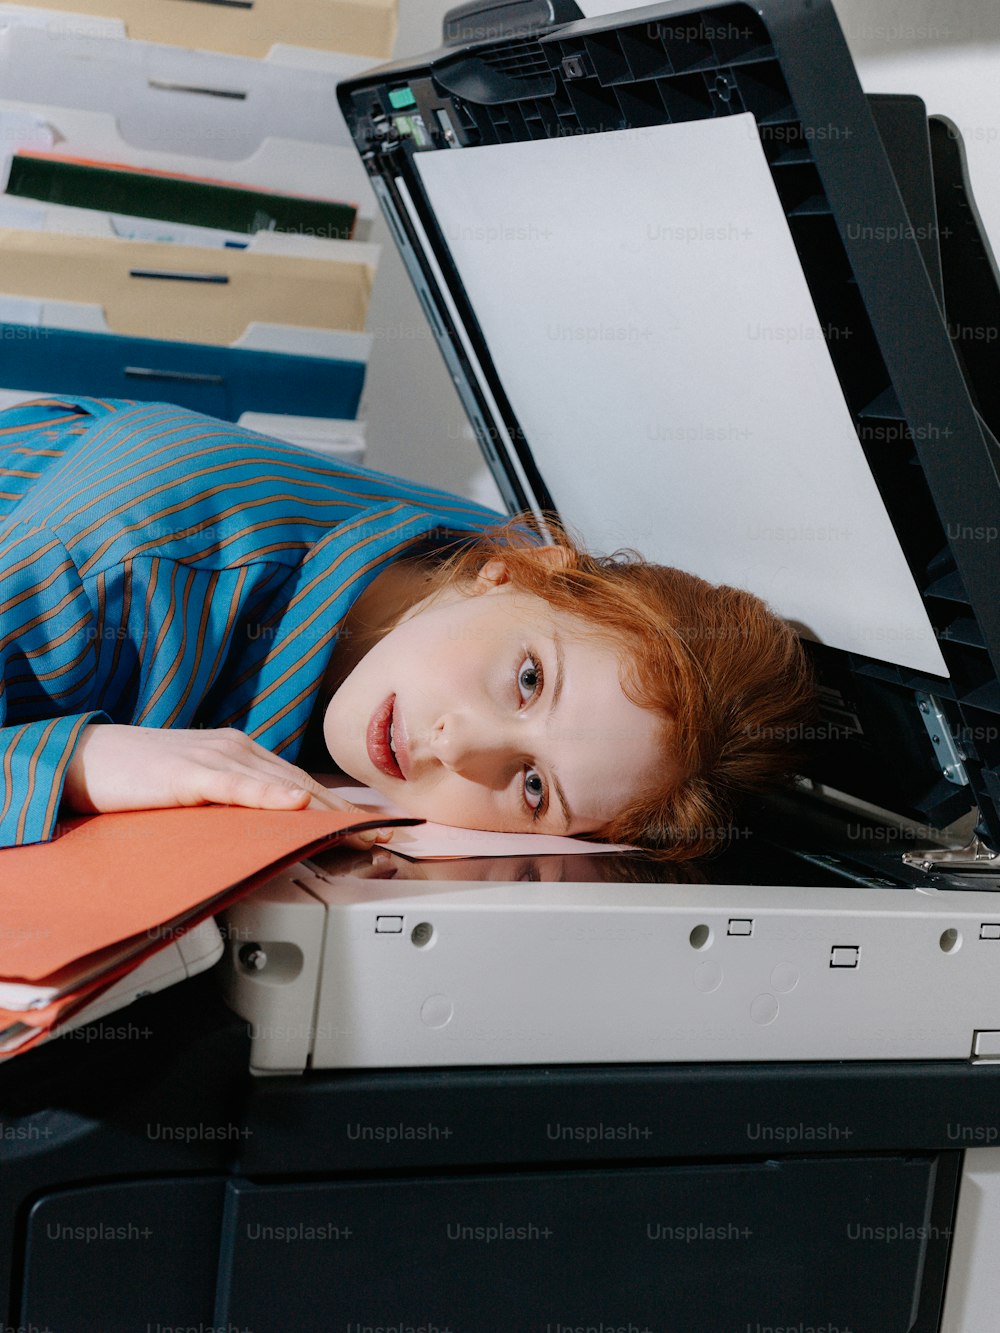 une jeune fille allongée sur un ordinateur portable ouvert